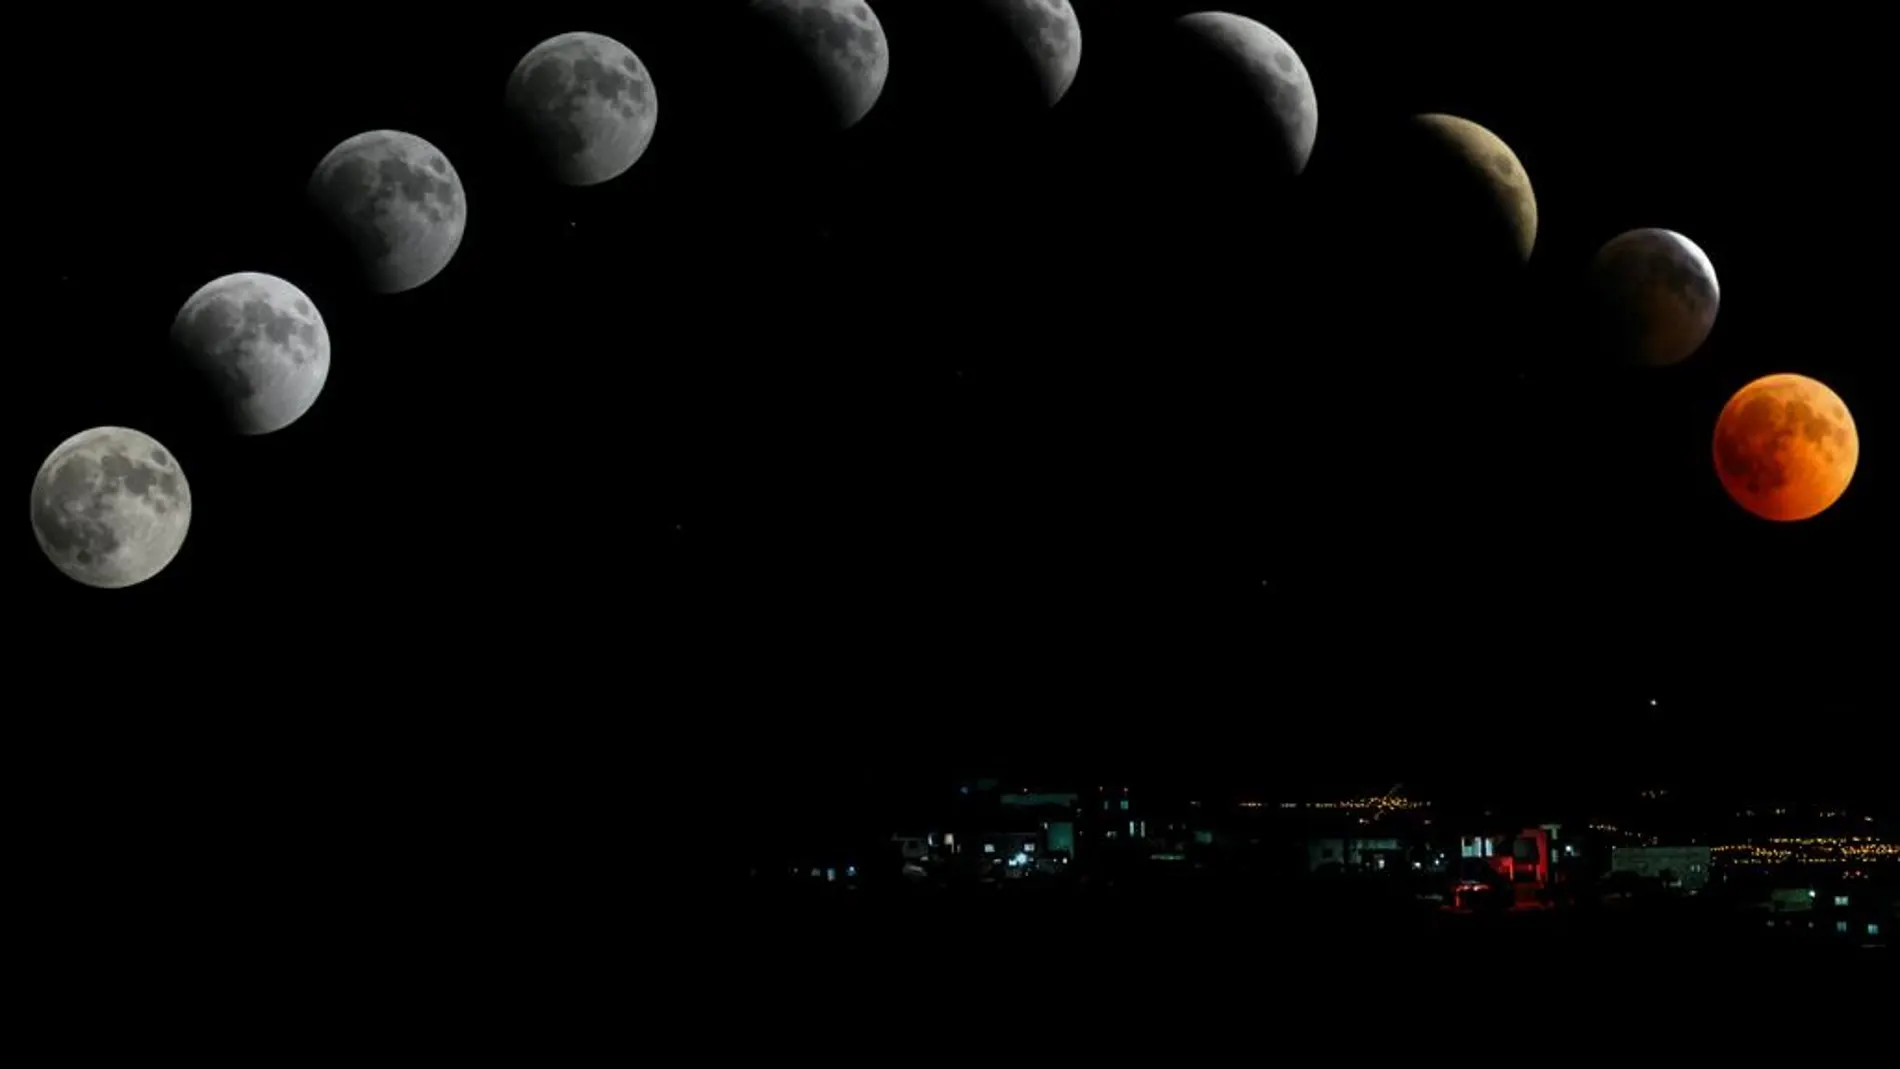 Calendario lunar de abril 2021: Las fases de la luna este mes